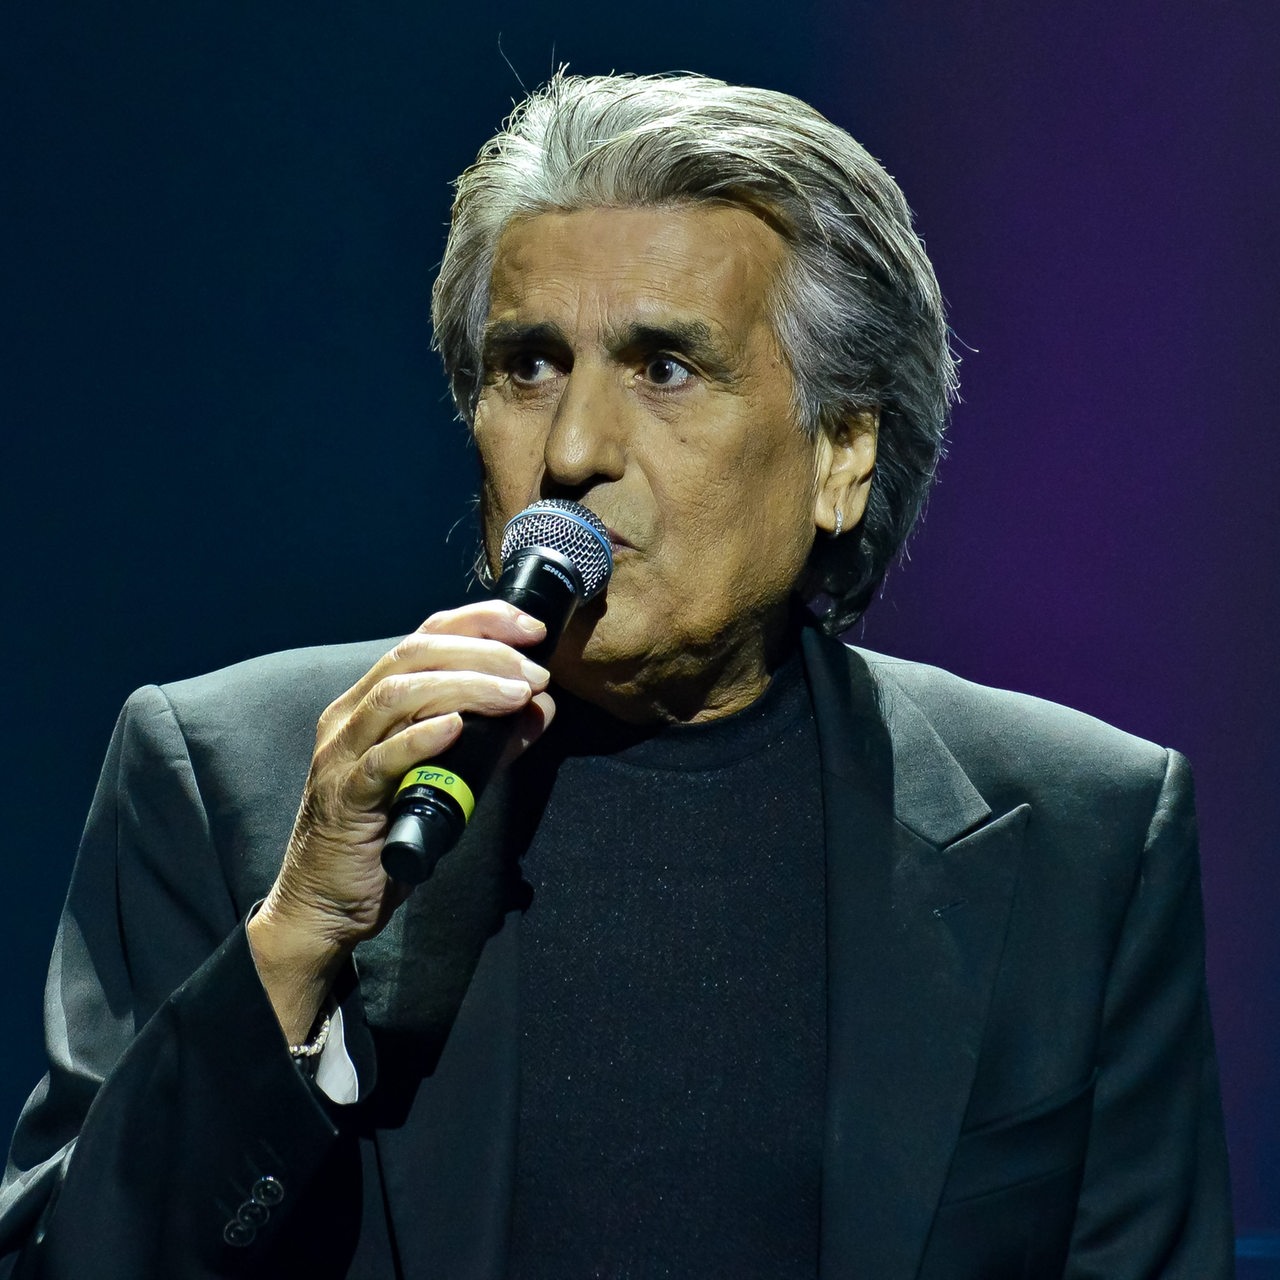 Porträt des italienischen Sängers Toto Cutugno mit Mikrofon auf der Bühne